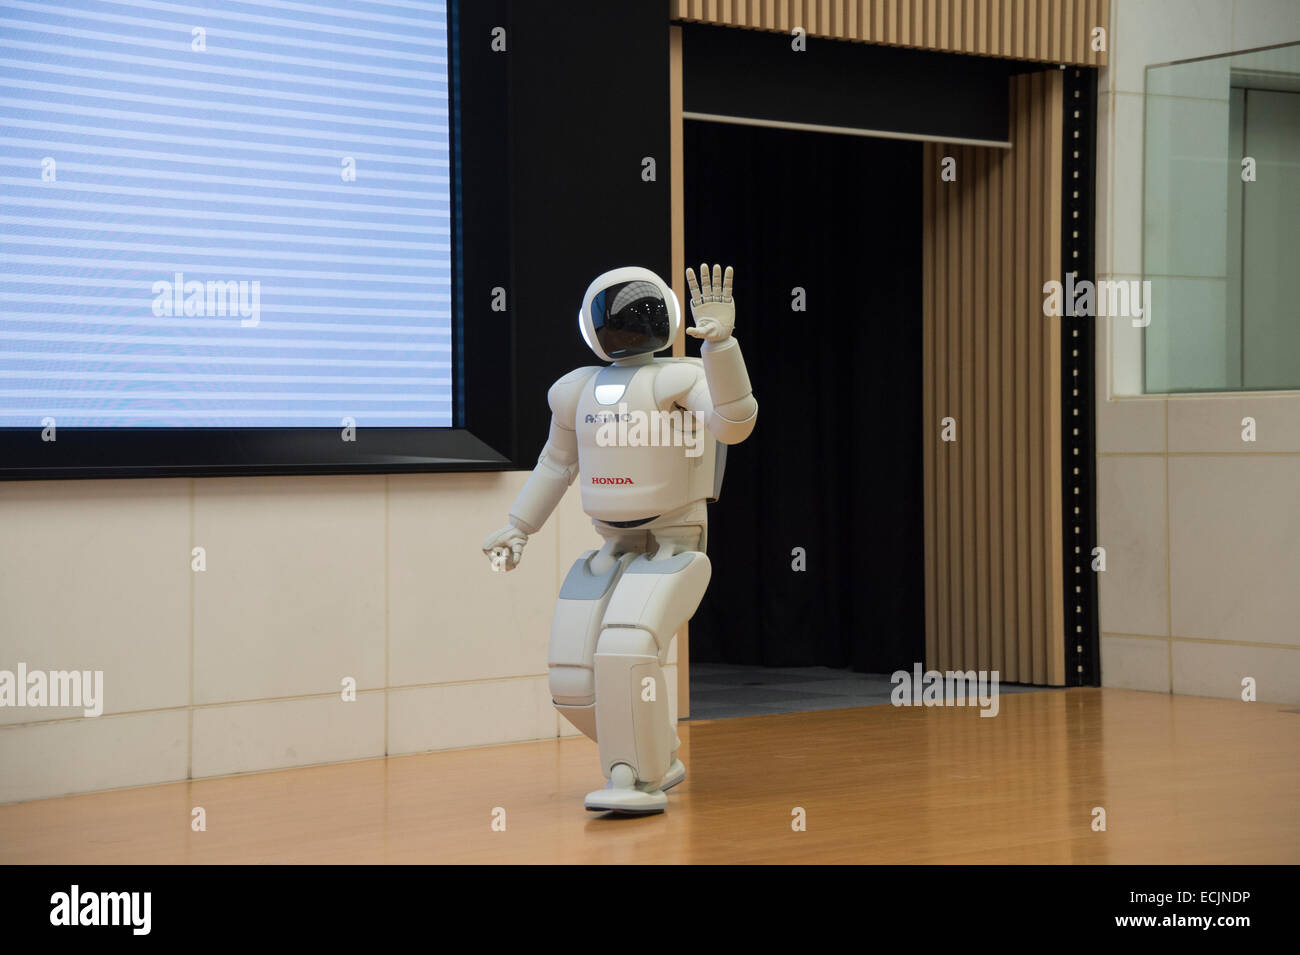 The robot Asimo performing at a meet and greet session at Honda HQ, Tokyo, Japan. Stock Photo